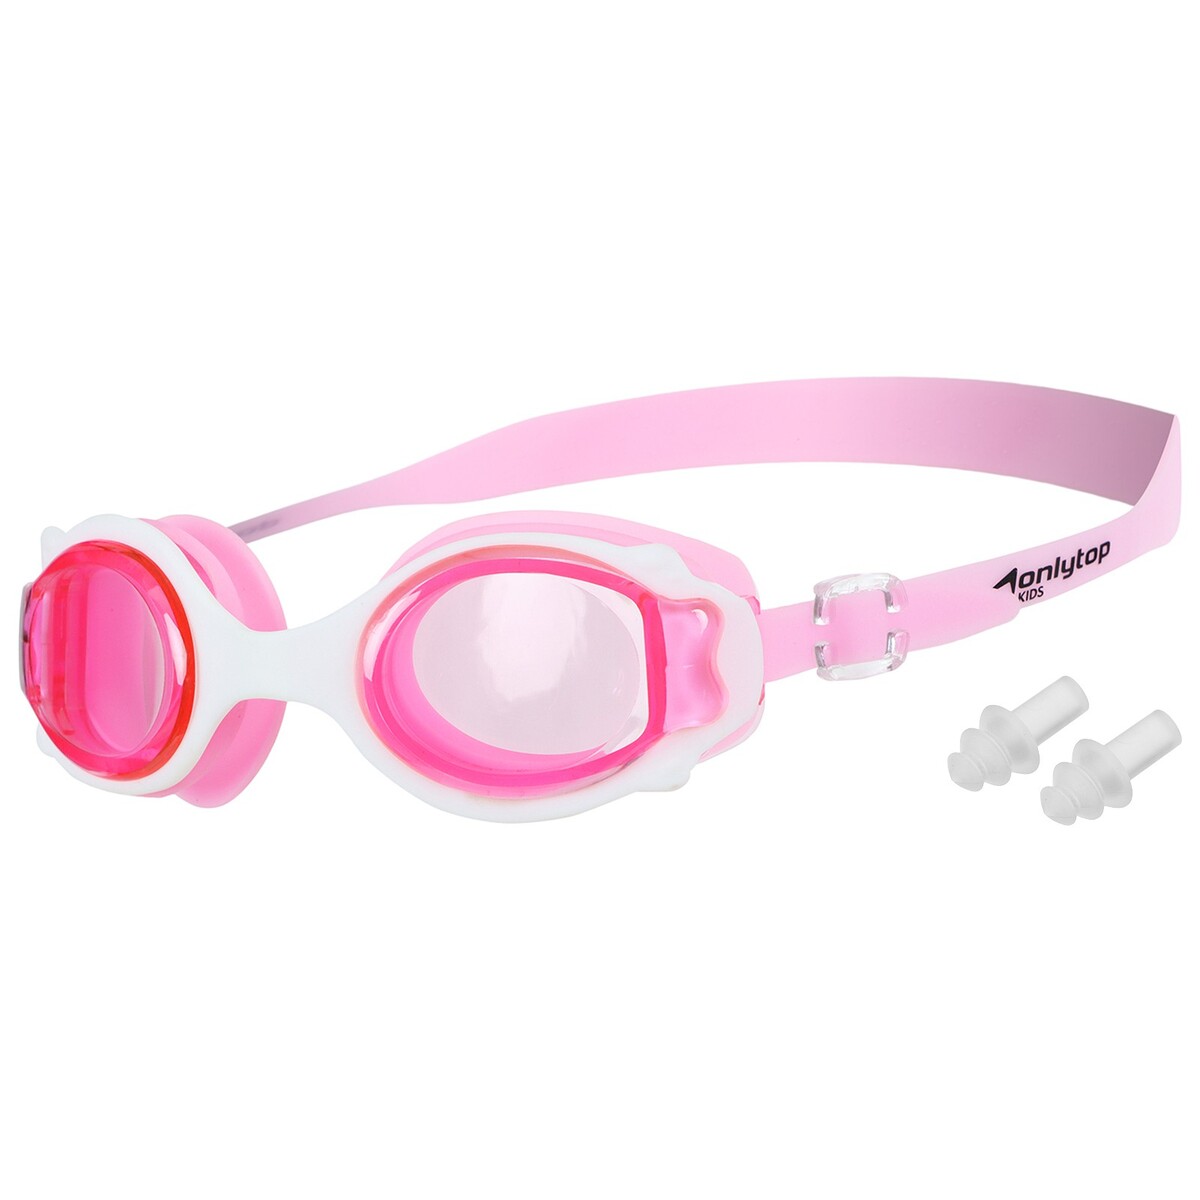 Очки для плавания детские onlytop, беруши, цвет розовый очки для плавания speedo futura biofuse flexiseal 8 11313b991